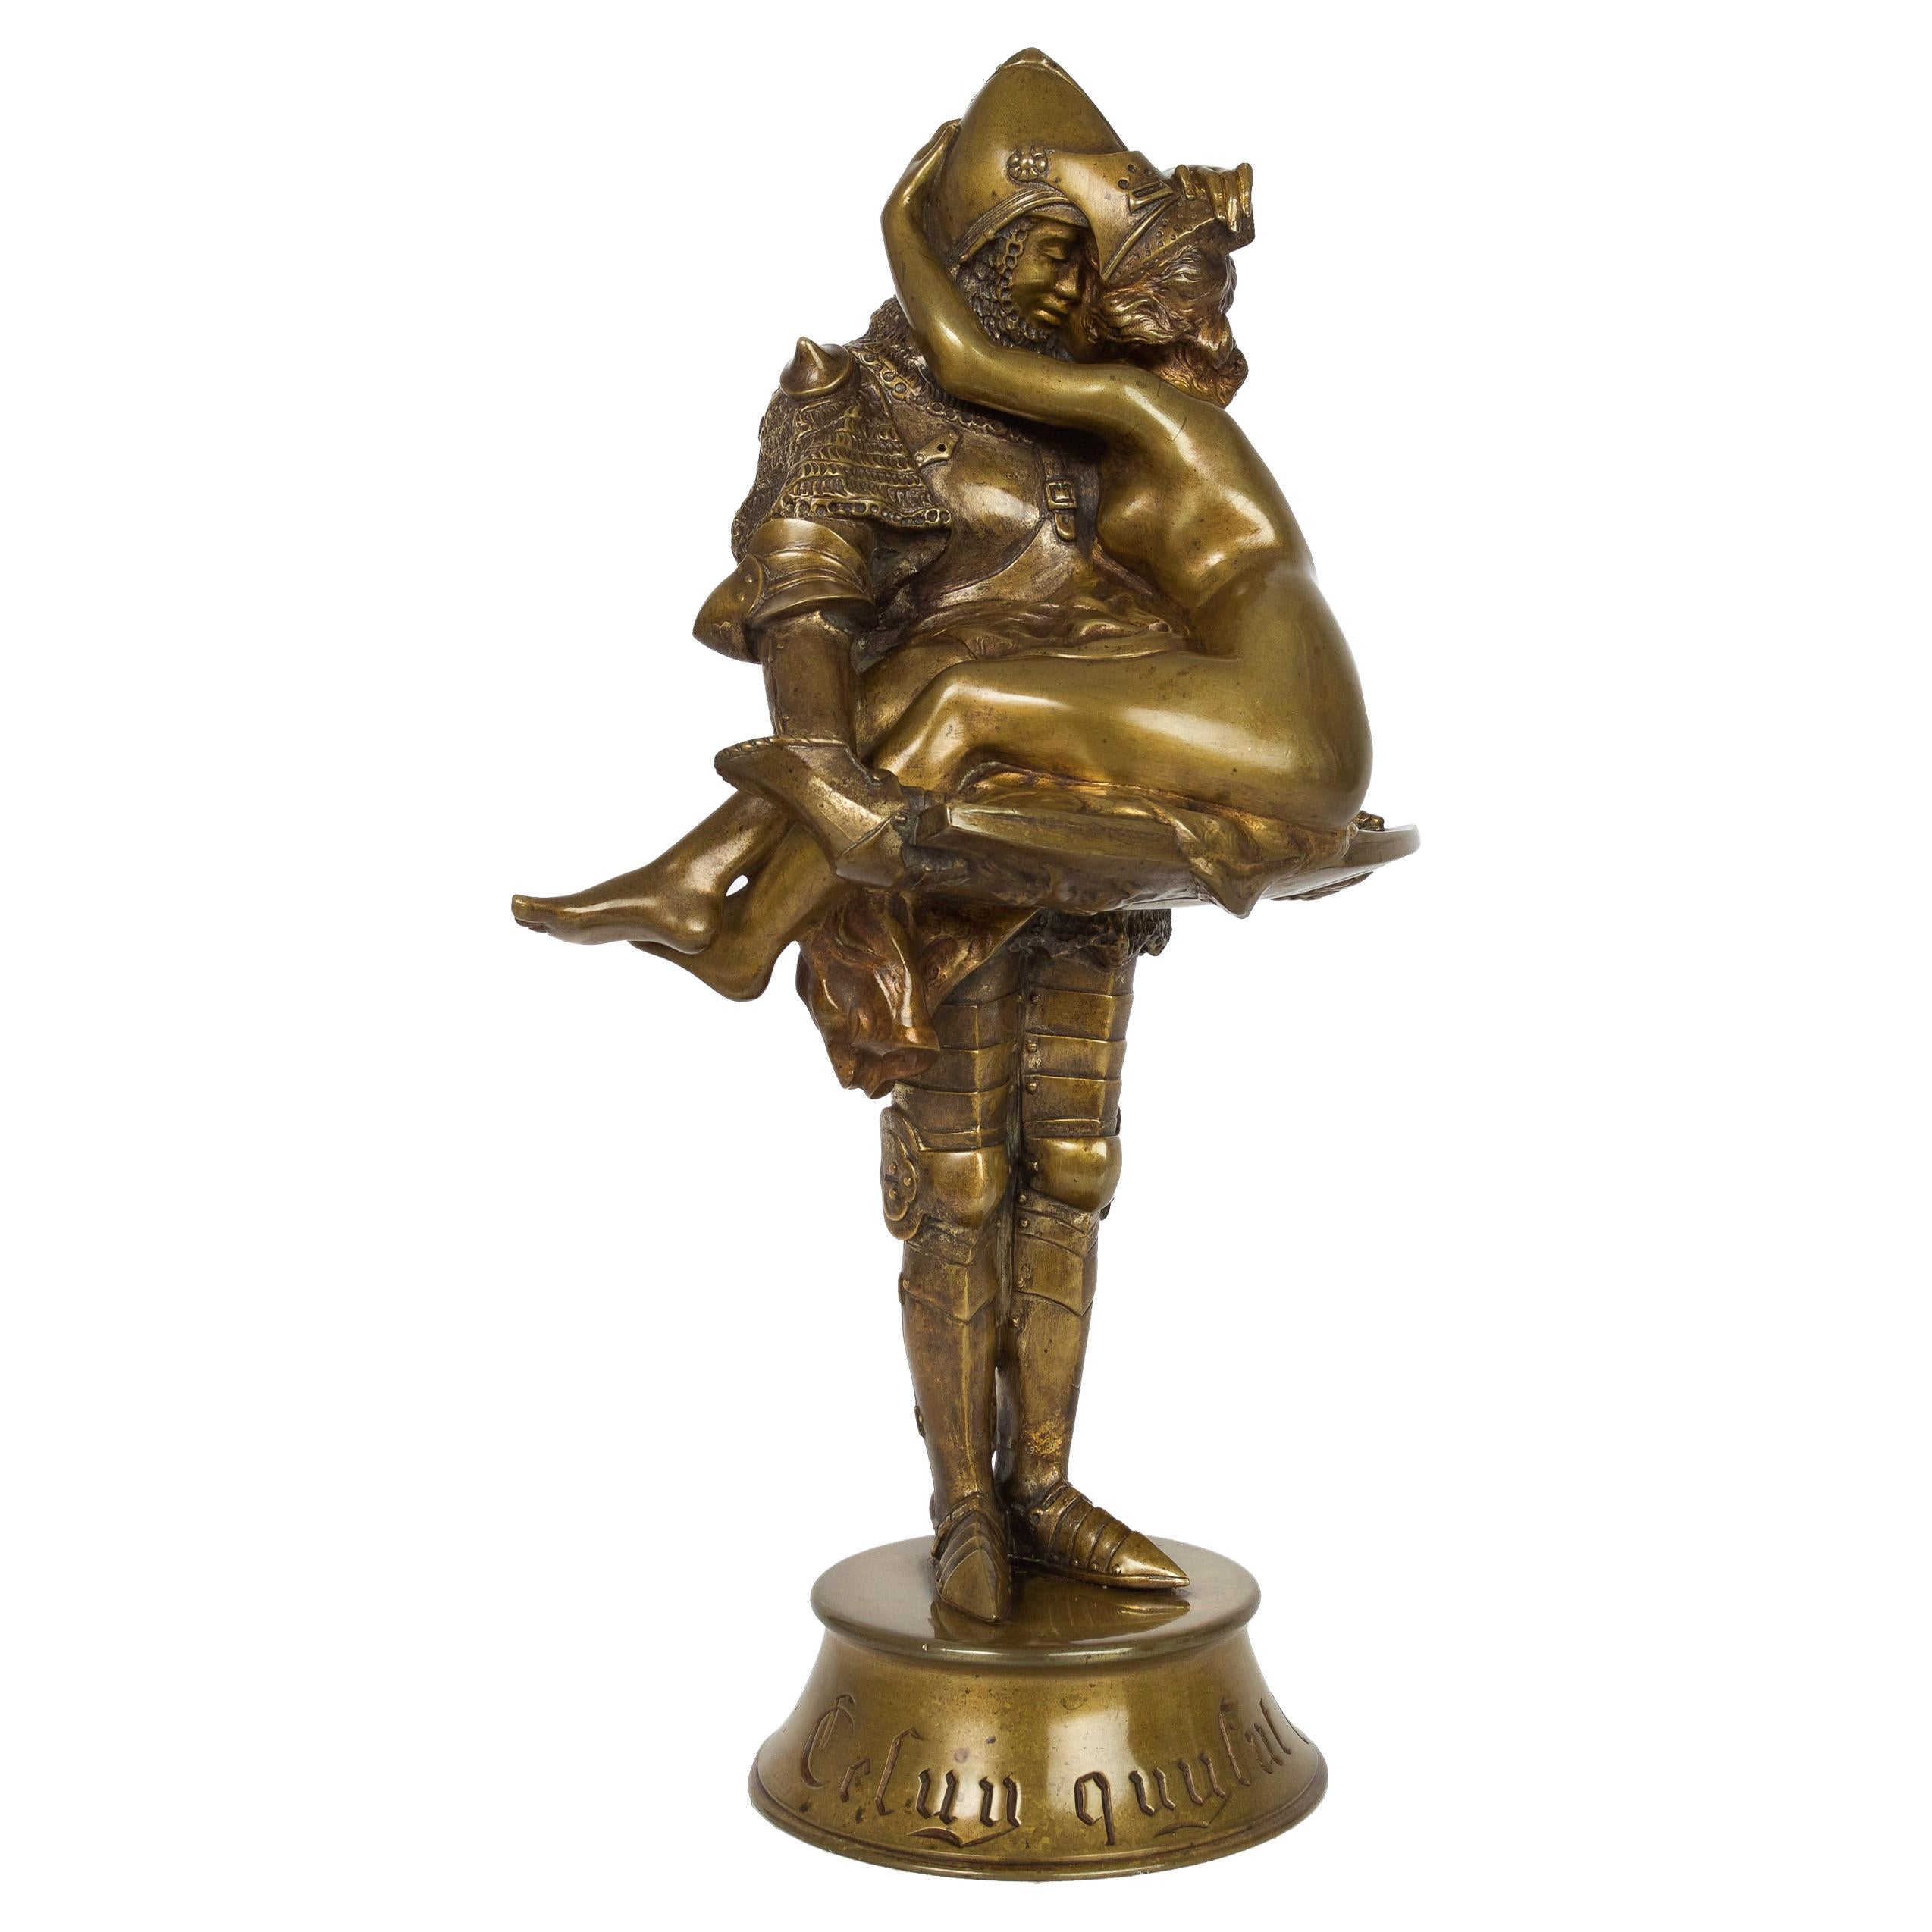 French Antique Art Nouveau Bronze Sculpture of Knight by François A. Clémencin